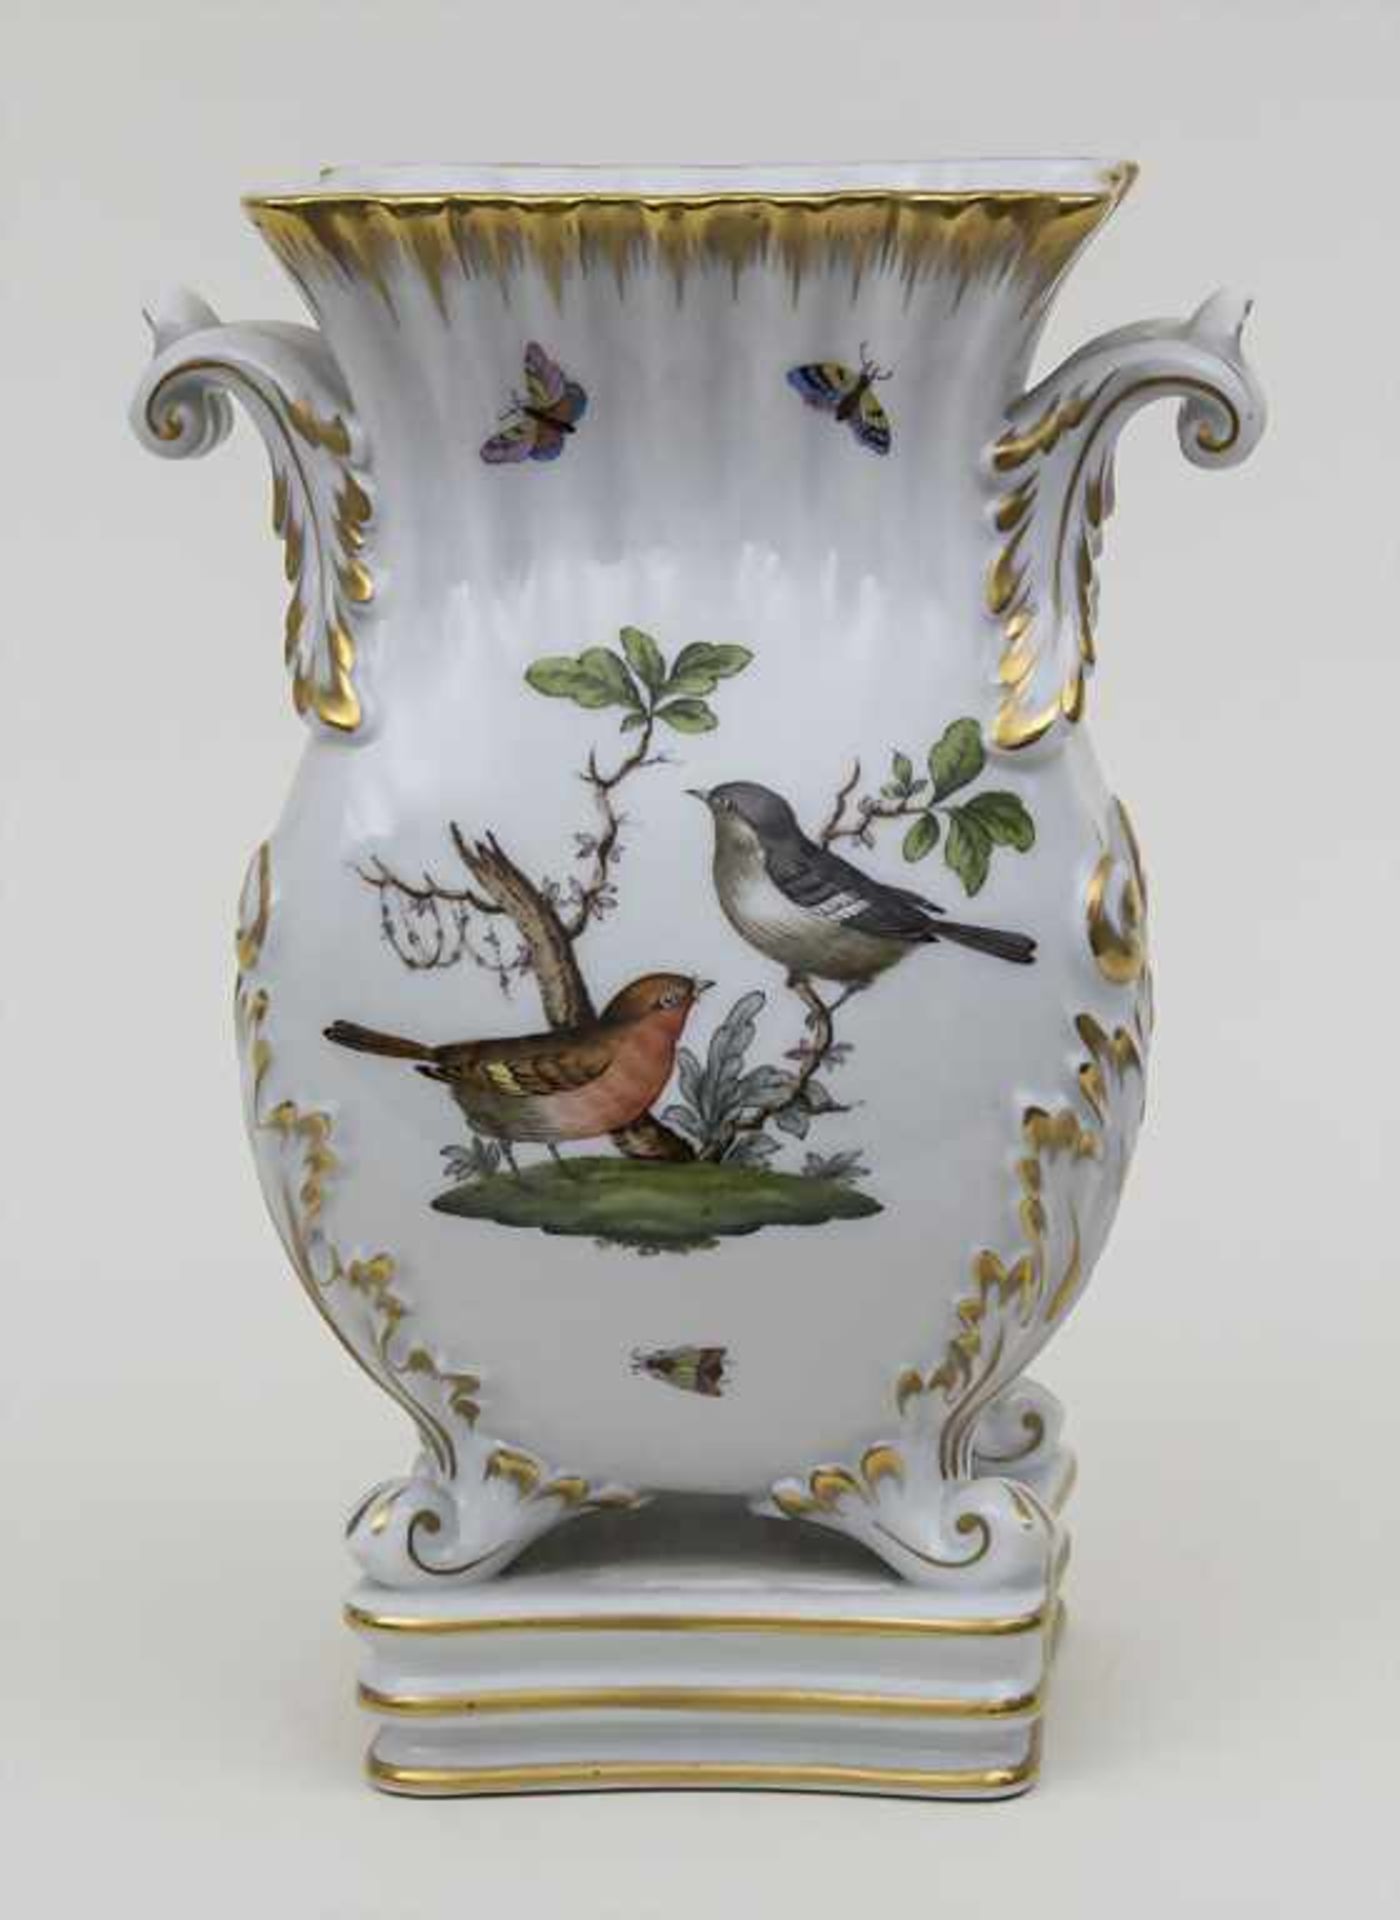 Ziervase mit Vogeldekor, Schmetterlingen und Insekten / A vase with birds, butterflies and